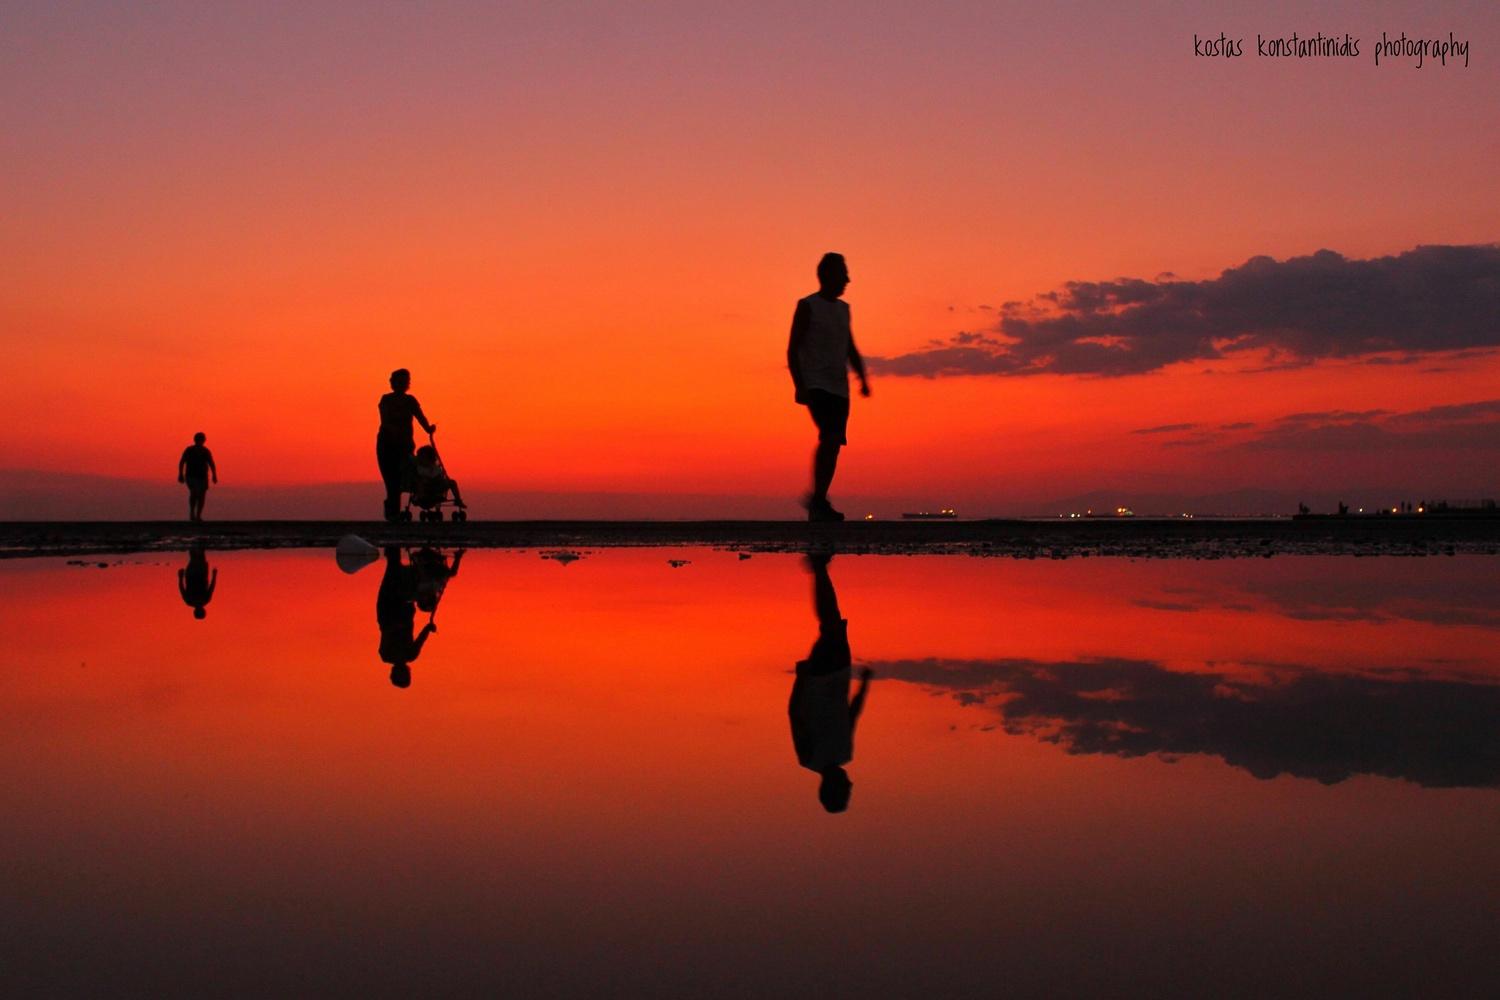 Θεσσαλονίκη, μαγικά ηλιοβασιλέματα! Από τον Κώστα Κωνσταντινίδη